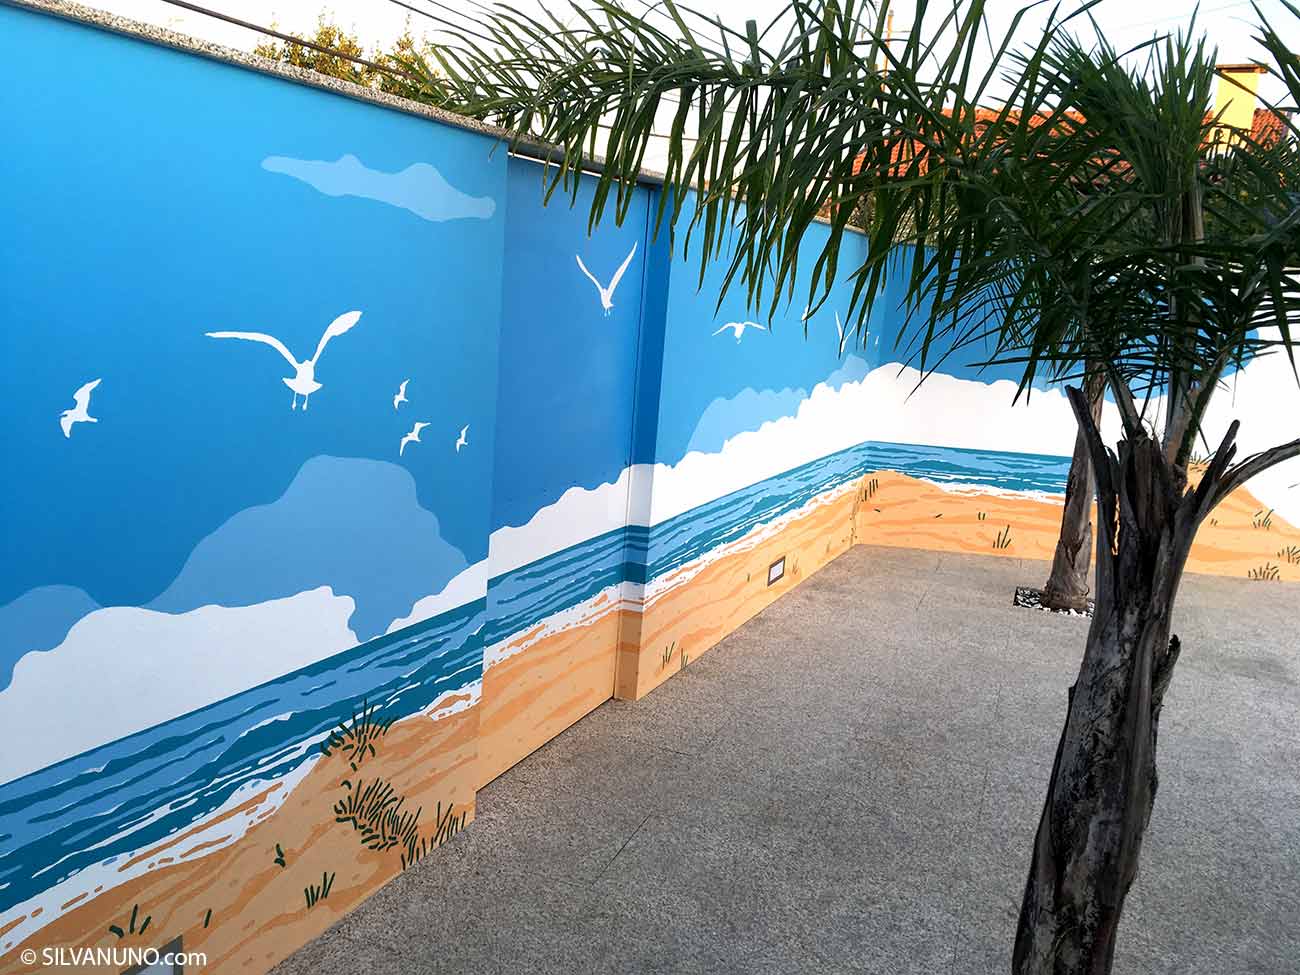 Pormenor mural praia de esmoriz - Silva Nuno